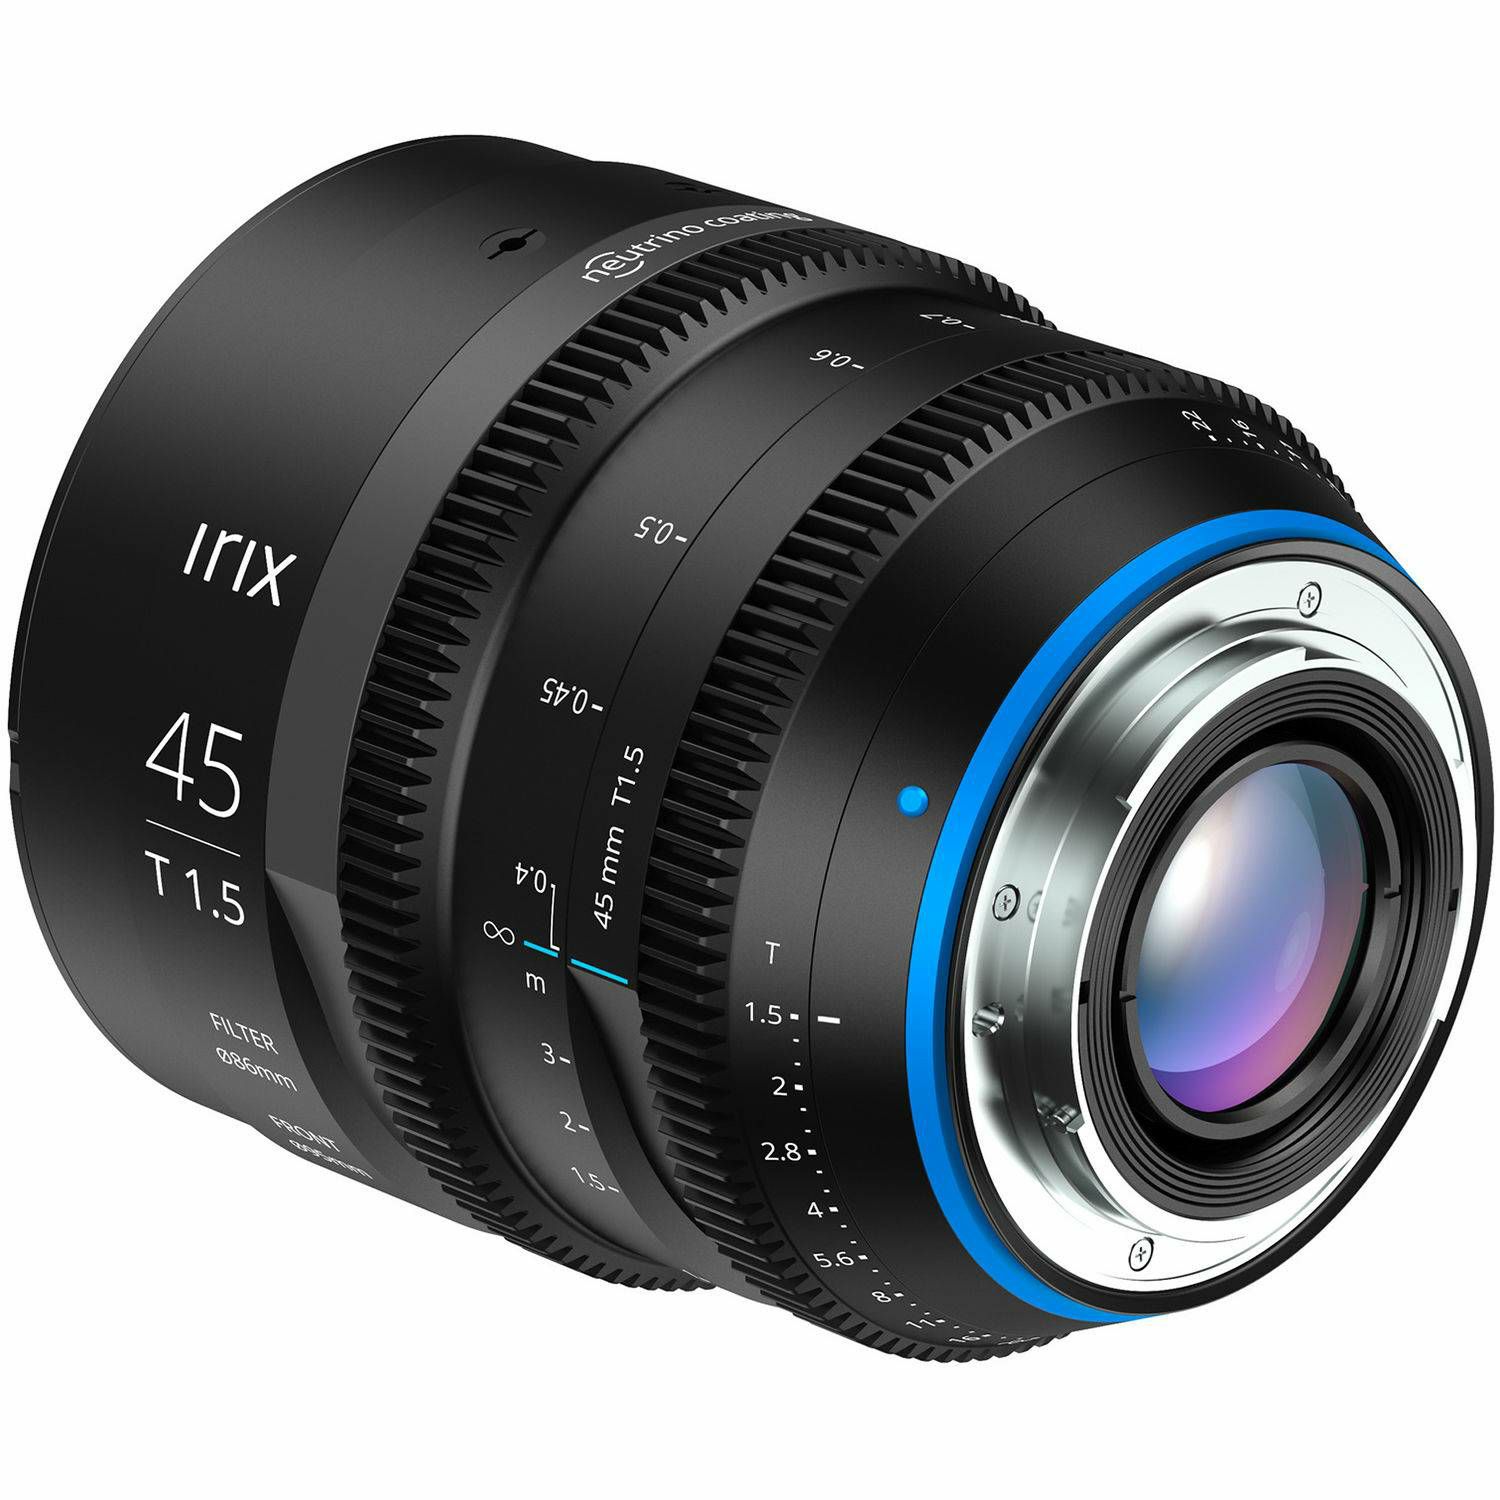 Irix Cine 45mm T1.5 Metric objektiv za Canon EF